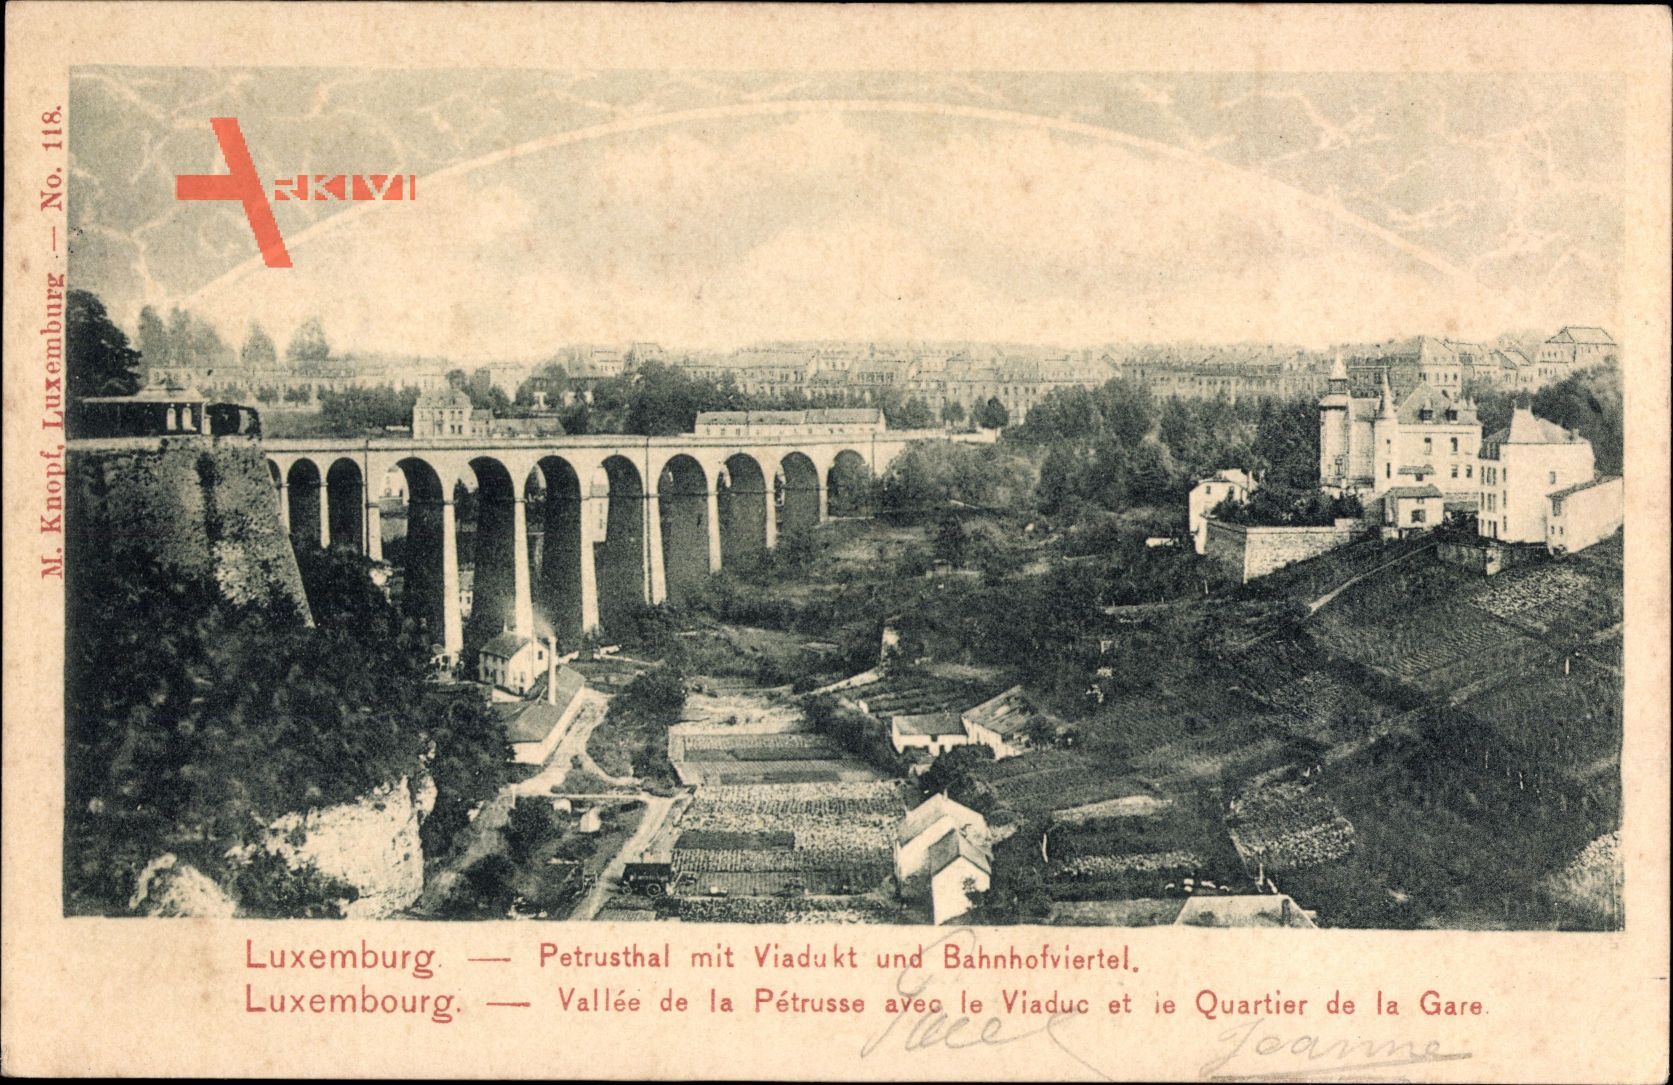 Luxemburg, Petrusthal mit Viadukt und Bahnhofviertel